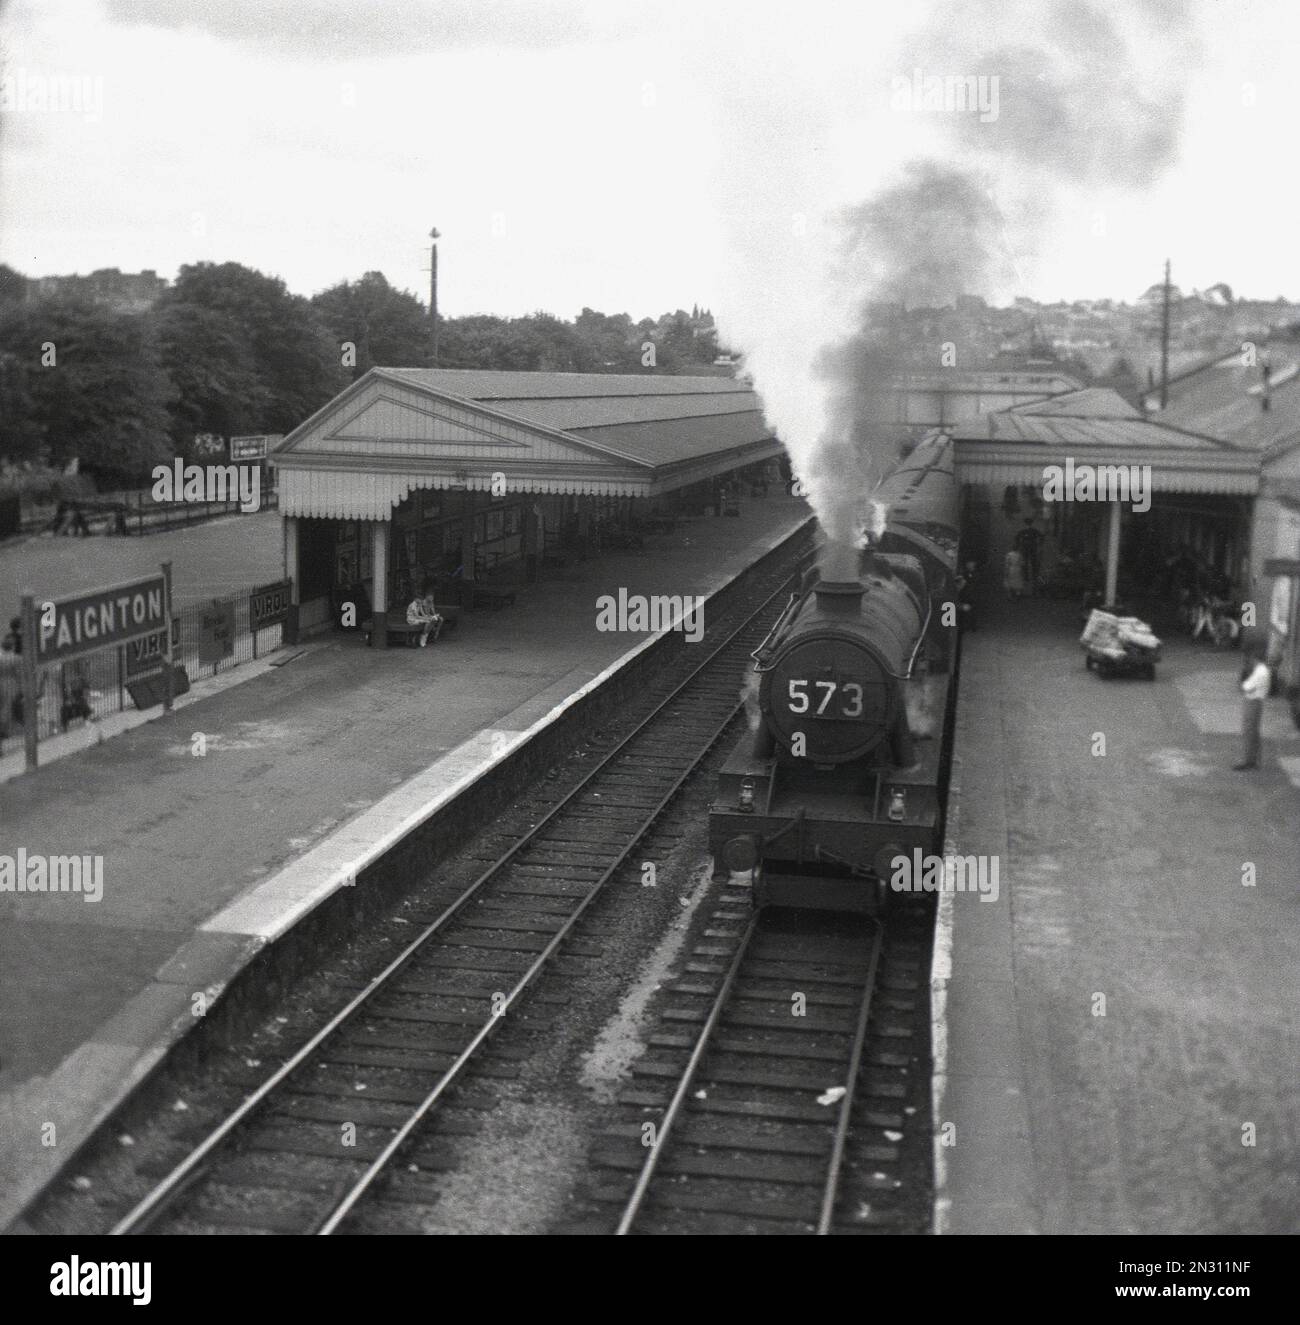 1955, storico, una locomotiva a vapore (573) in attesa sul binario alla stazione ferroviaria di Paignton, Torbay, Devon, Inghilterra, Regno Unito. Aperto come ferrovia a binario singolo nel 1859, costruito utilizzando un ampio calibro, nel 1892 è stato convertito in standard guage. La doppia pista arrivò nel 1910 e nel 1924 furono erette delle tettoie sulle piattaforme. Il treno sul paltform è un treno di classe Great Western 4700, una locomotiva a vapore utilizzata principalmente per i veloci servizi di trasporto notturno, ma è stato utilizzato anche per i servizi passeggeri verso l'Inghilterra occidentale durante i mesi estivi. Foto Stock